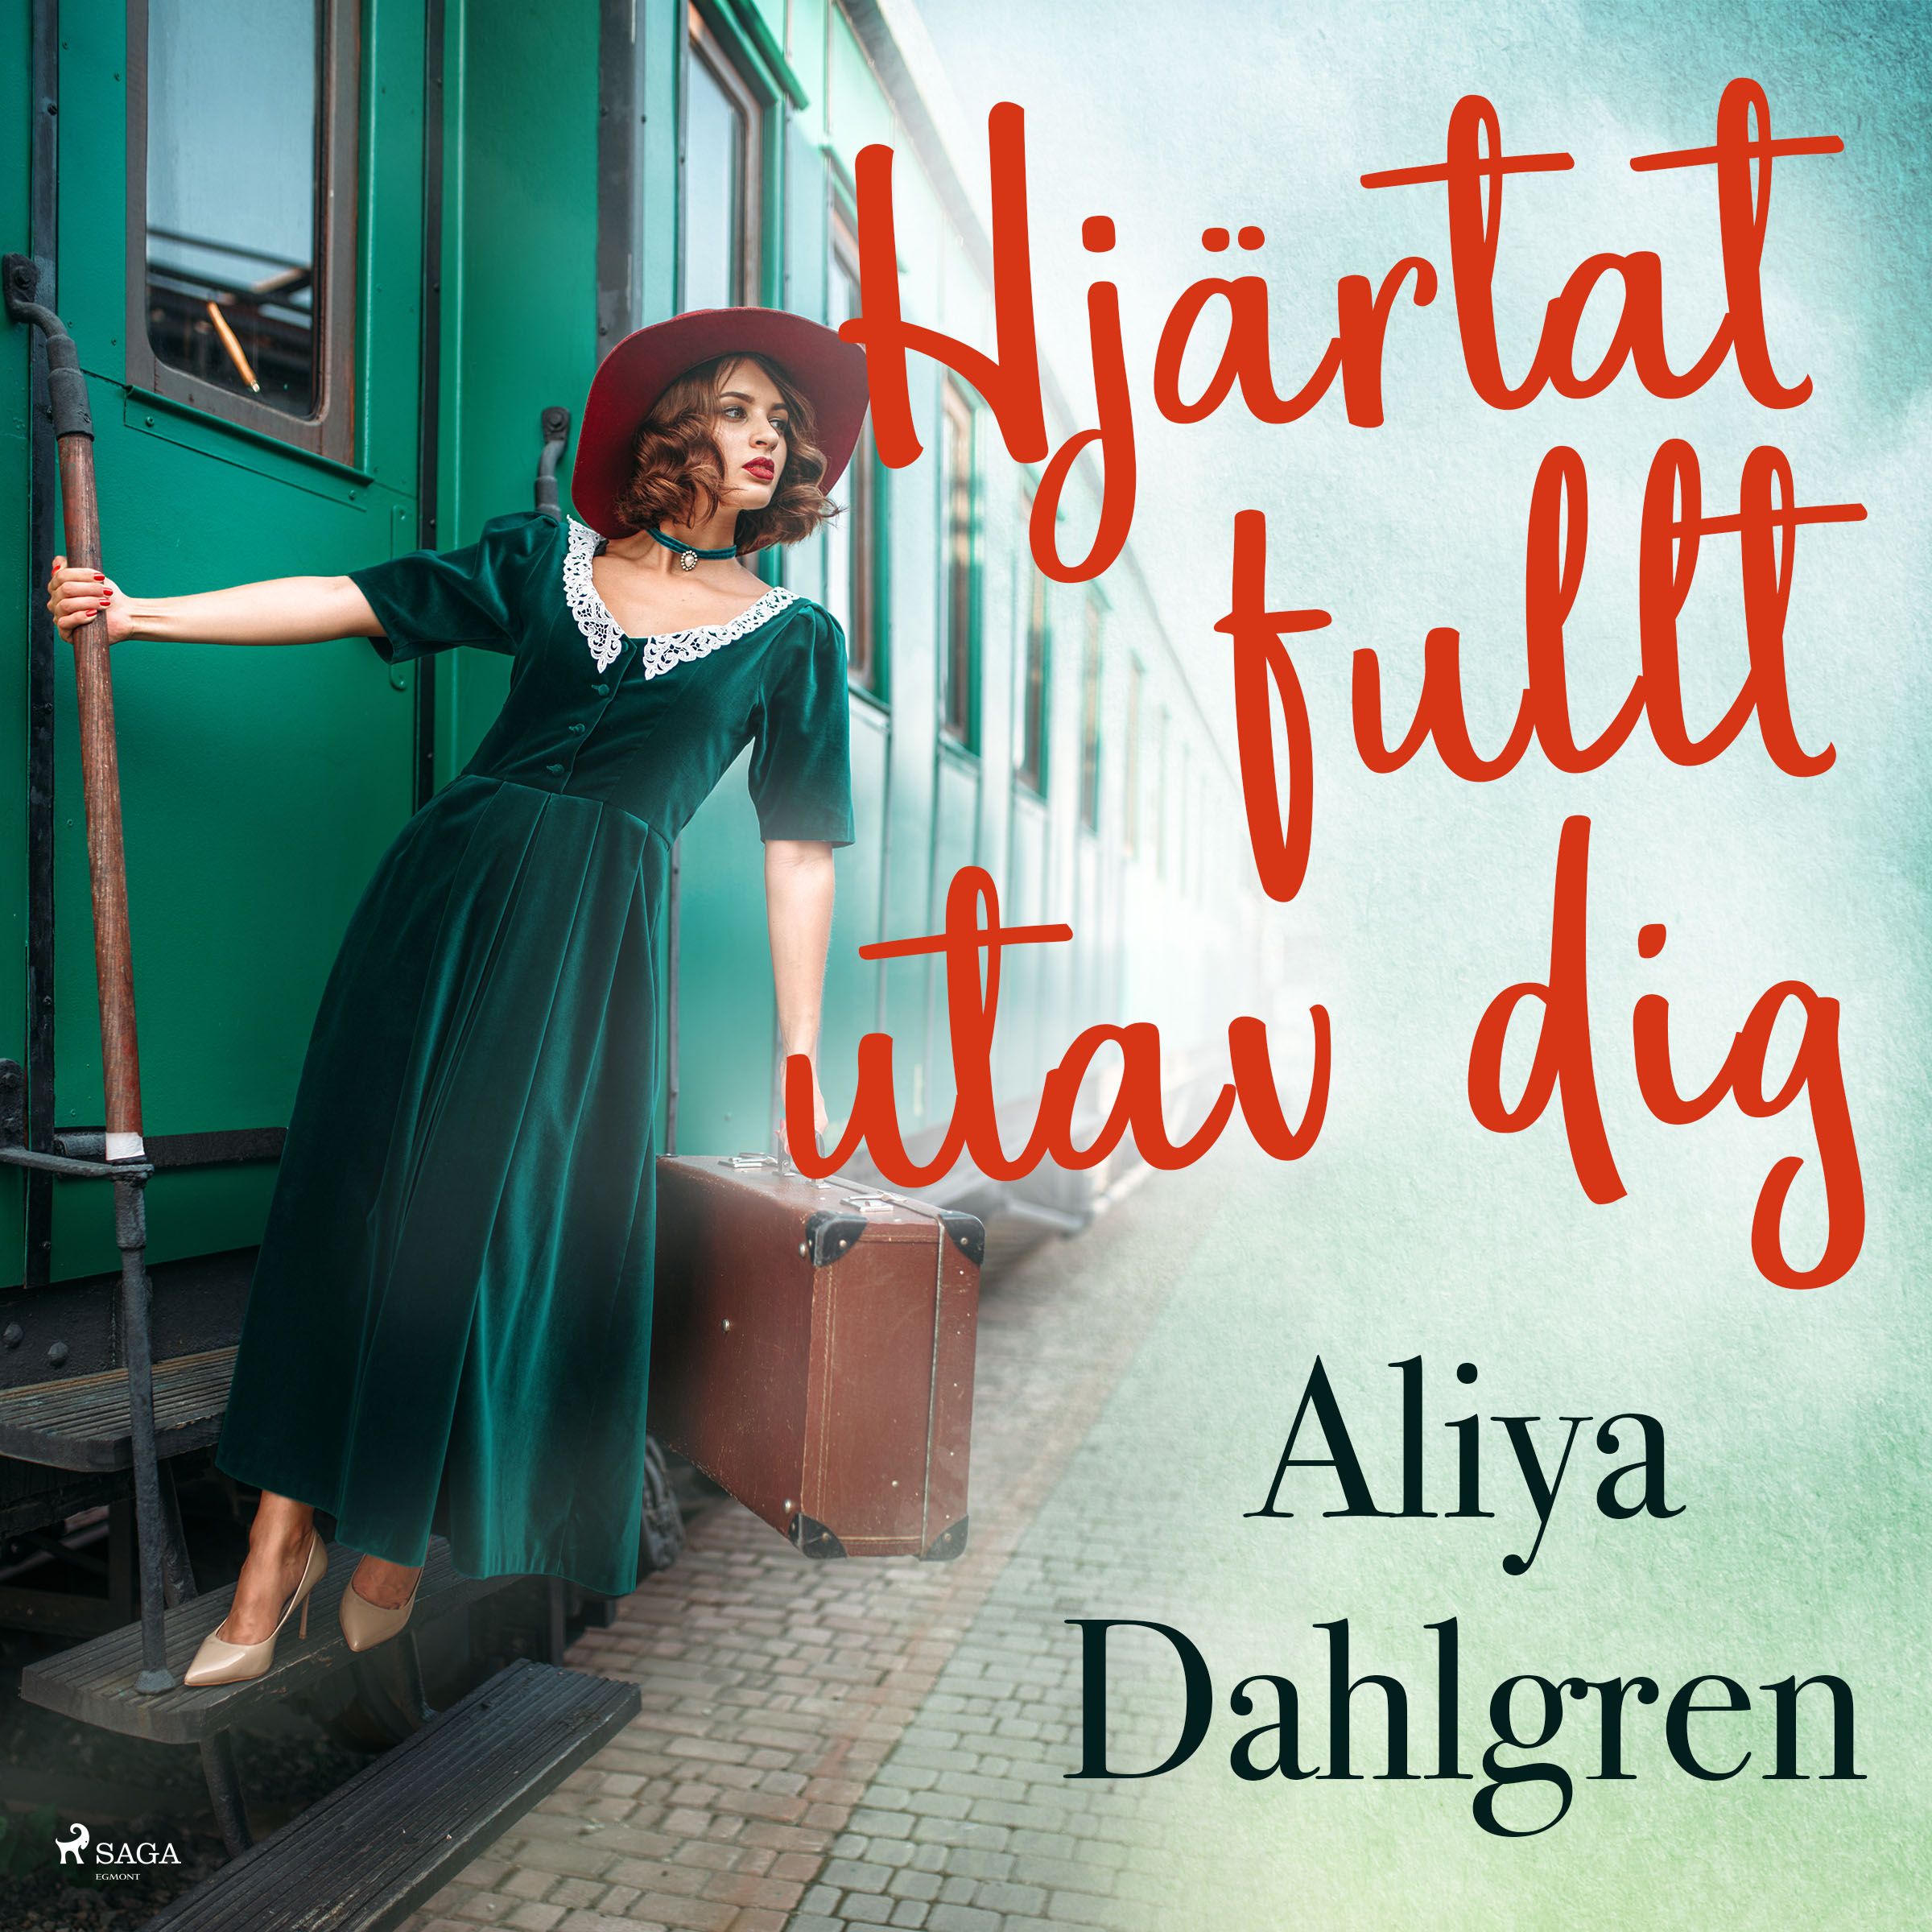 Hjärtat fullt utav dig, ljudbok av Aliya Dahlgren